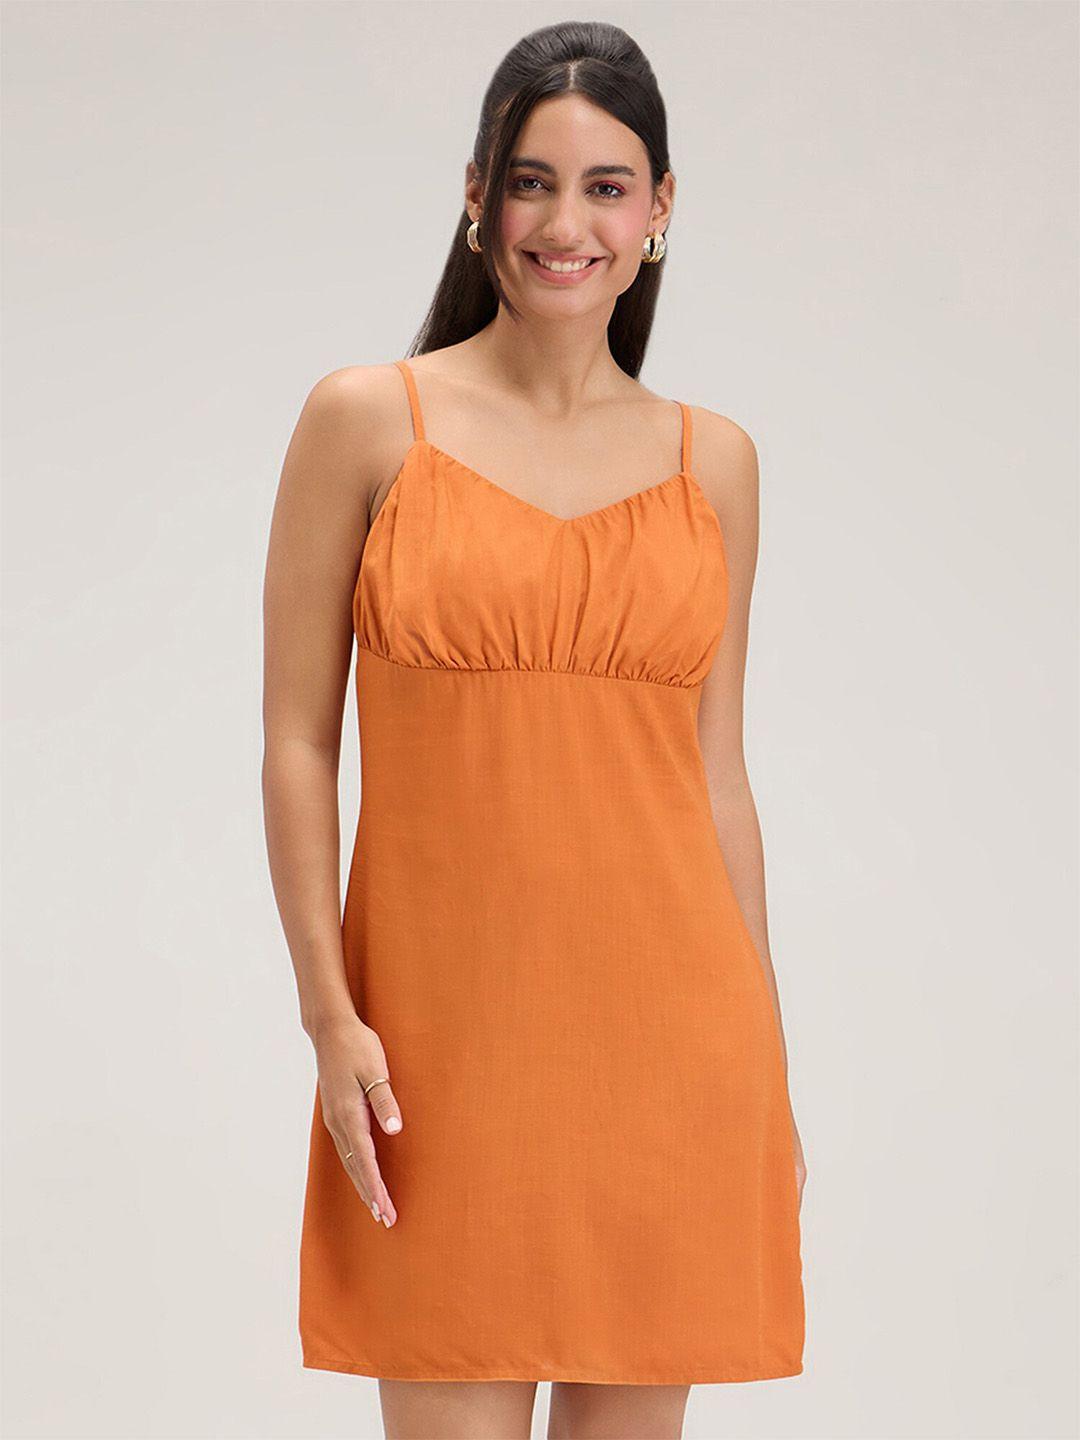 20dresses orange shoulder straps gathered a-line mini dress